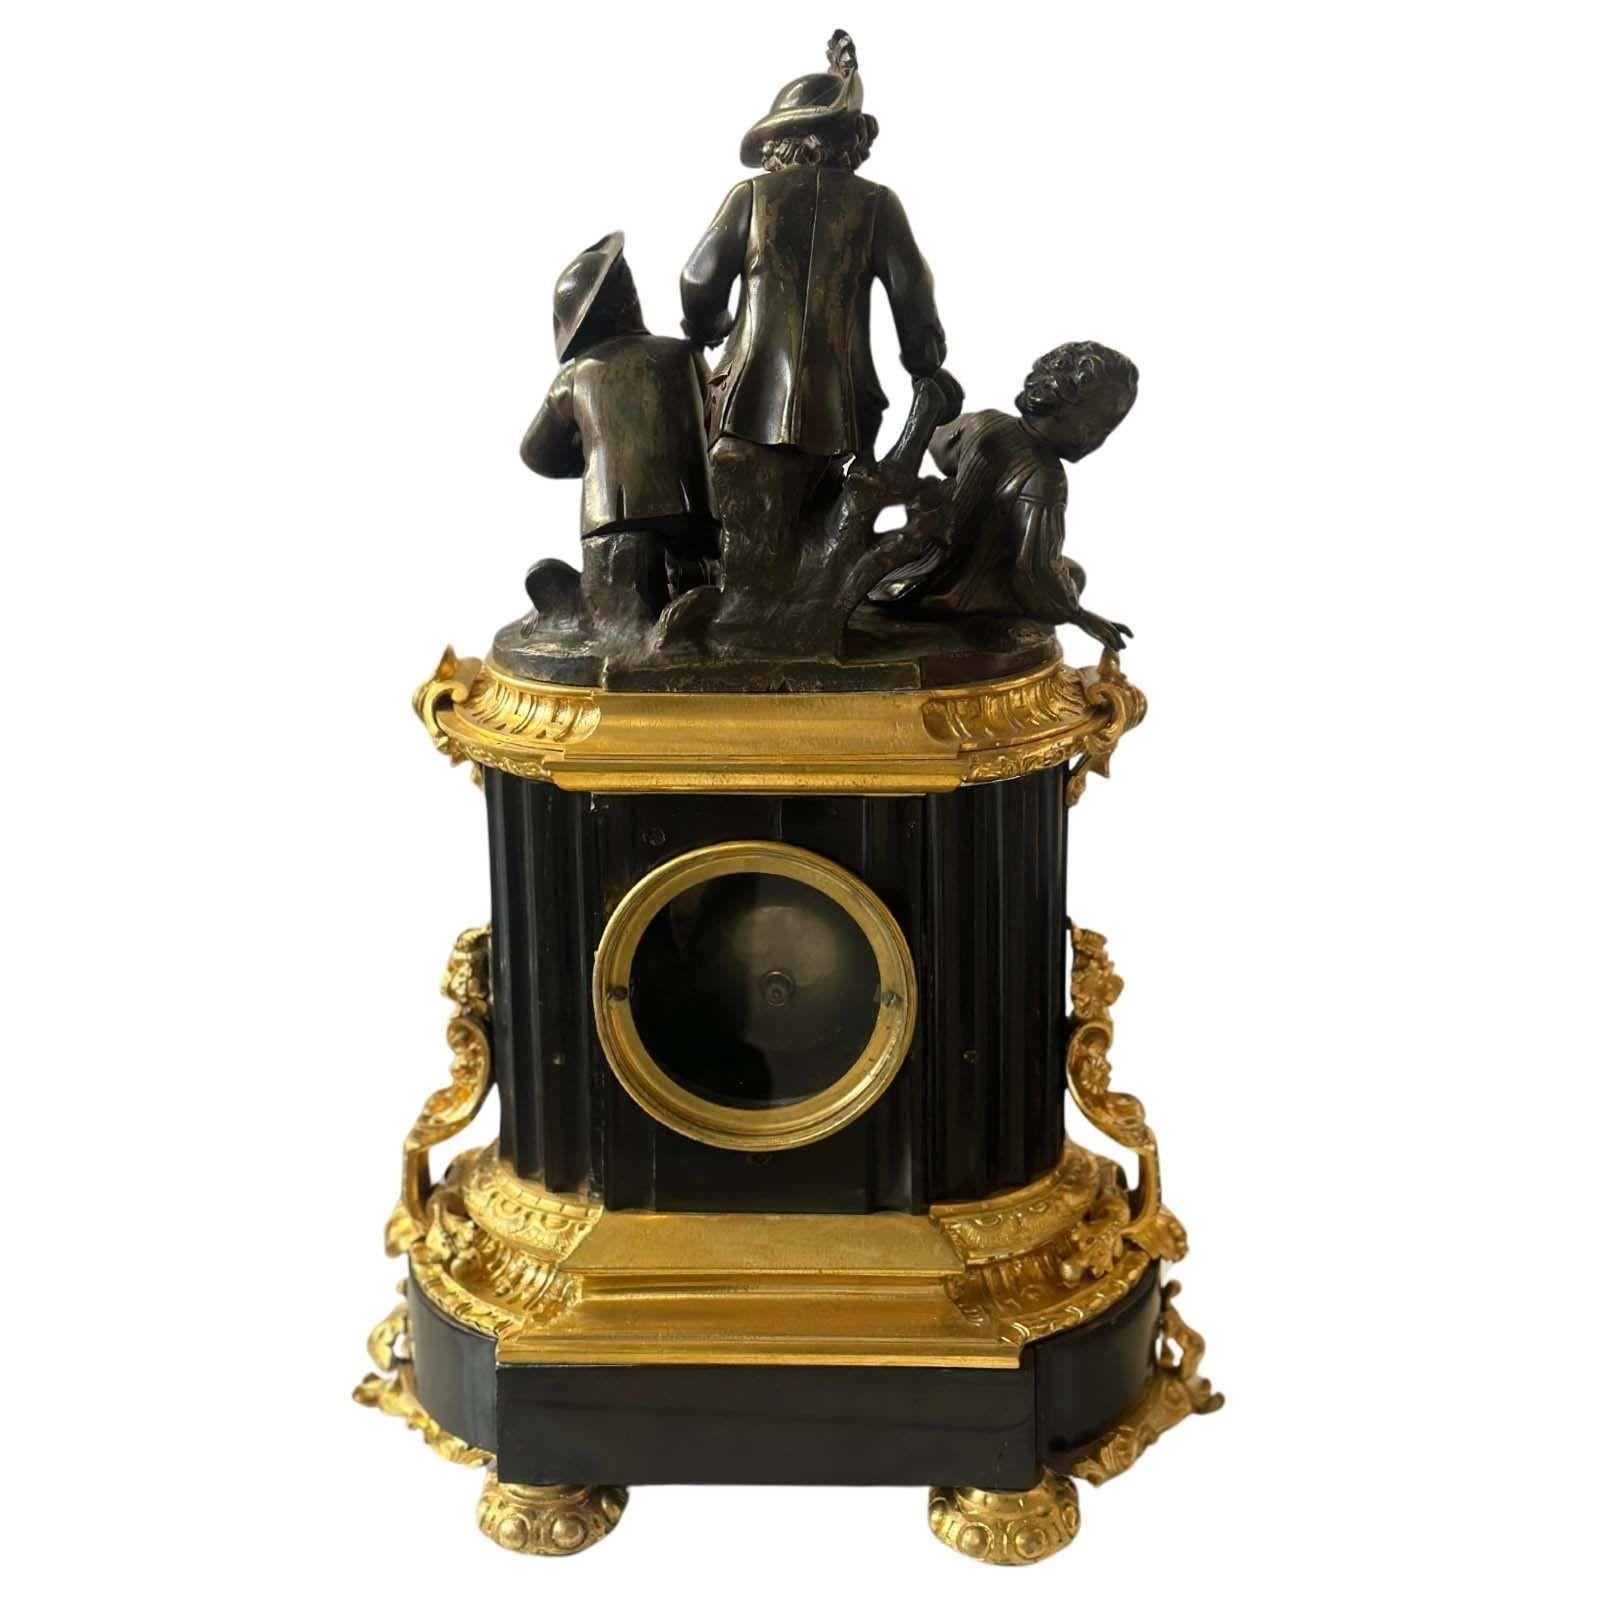 Französisch D'ore und patinierte Bronze skulpturale Uhr von F. Dumouchel, von einem schwarzen Marmorsockel unterstützt. Aus dem späten 19. Jahrhundert; rundum mit Blattmotiven verziert und mit einer Darstellung von drei Kindern auf der